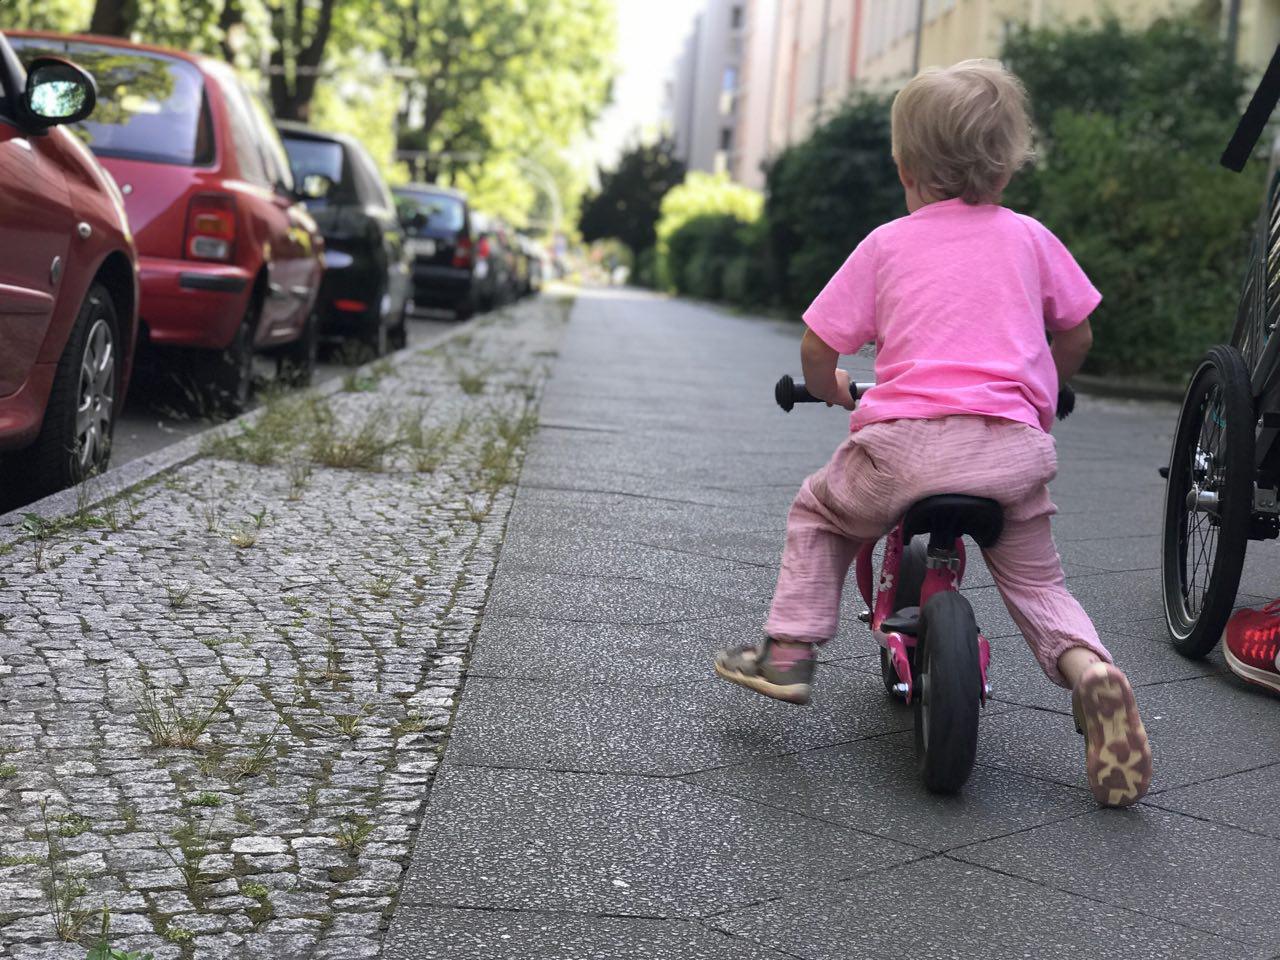 Sumsebiene Püppiline: Meine Tochter flitzt mit 26 Monaten auf dem Laufrad davon. Ich muss rennen! - Mehr Infos auf Mamaskind.de